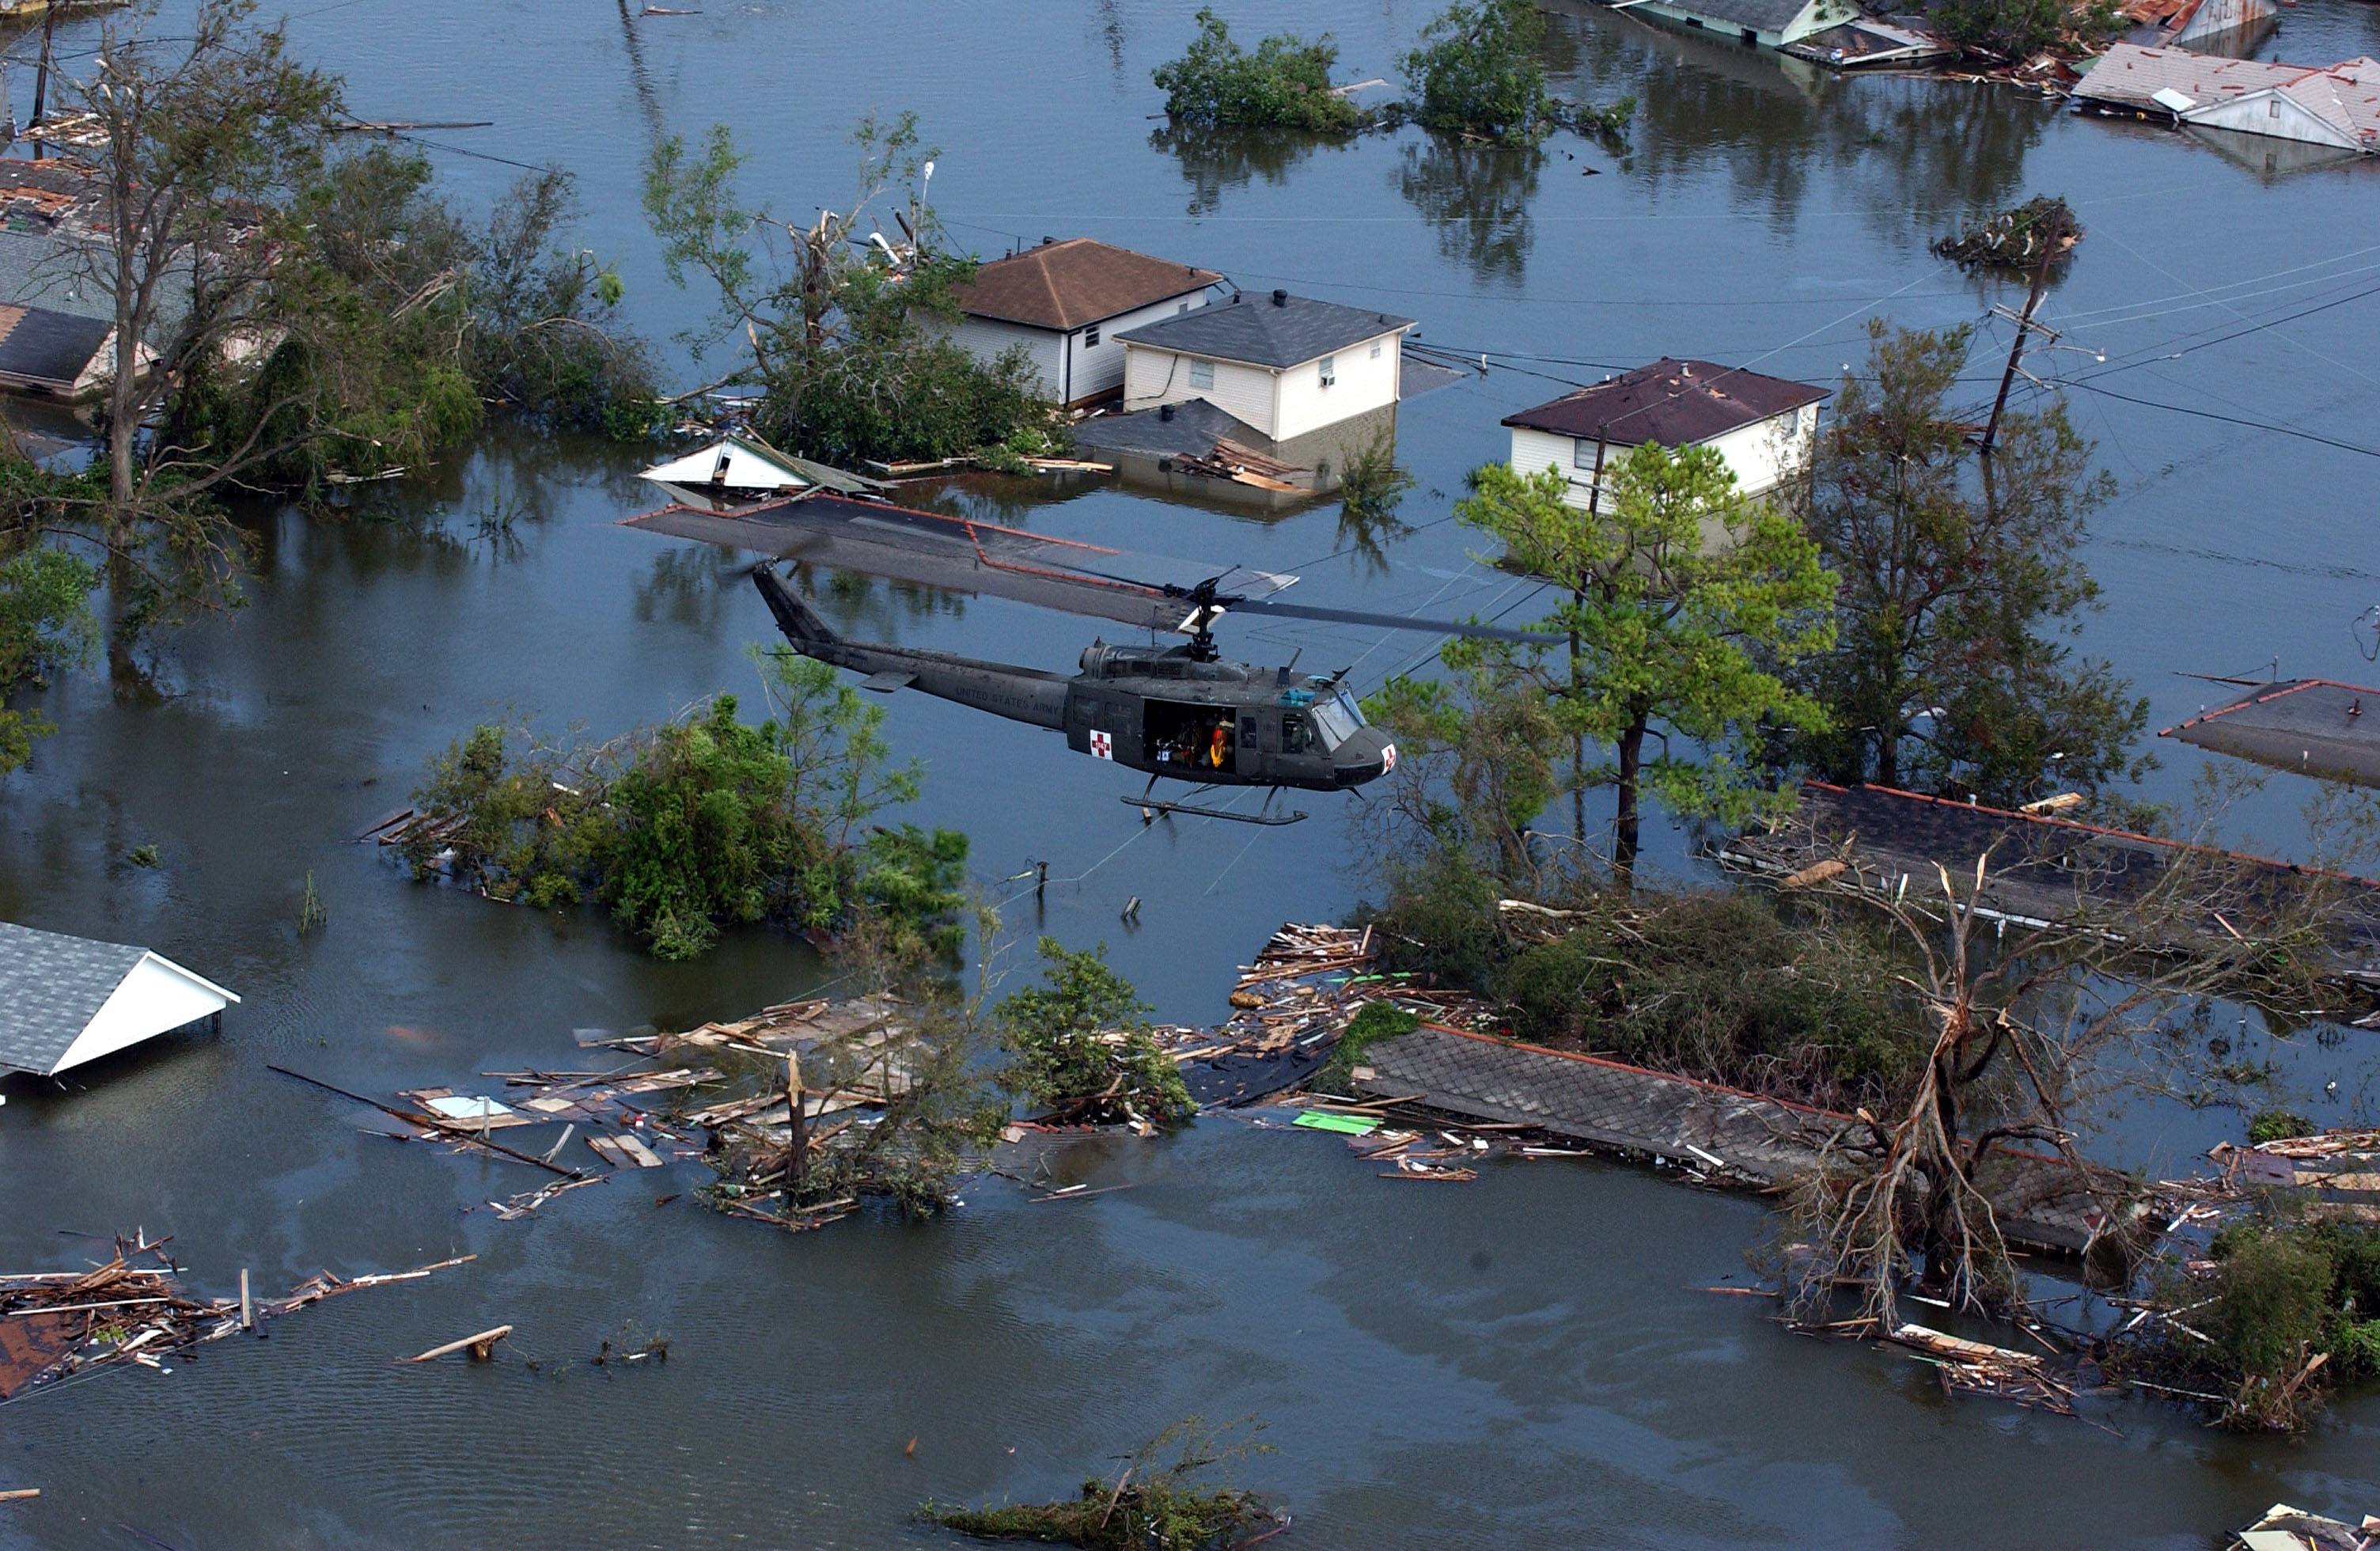 FEMA - 14985 - Photograph by Jocelyn Augustino taken on 08-30-2005 in Louisiana